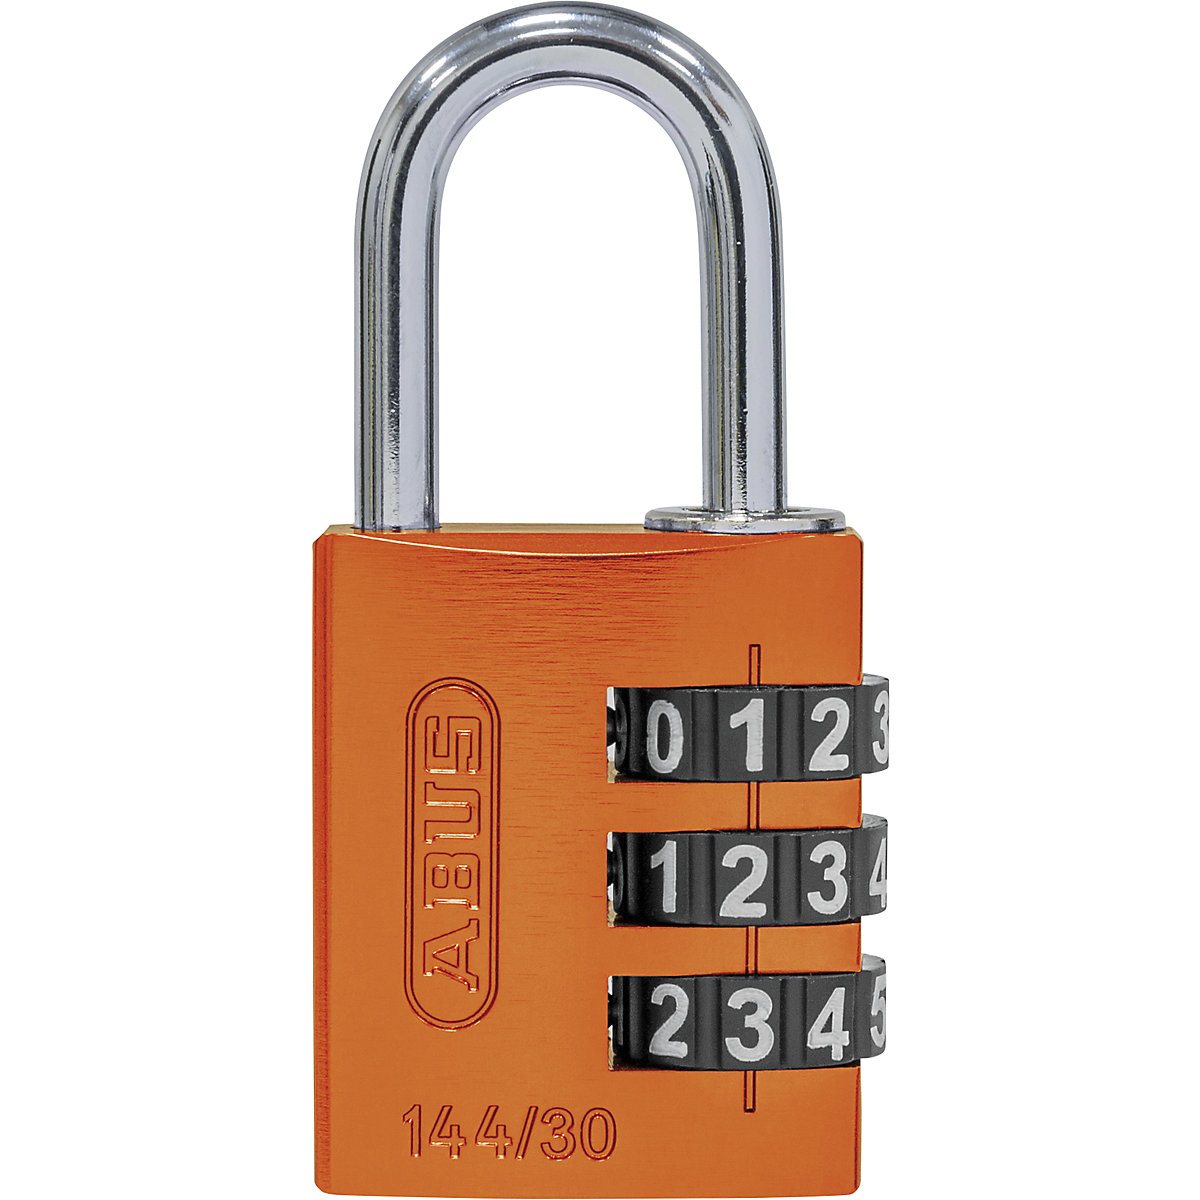 Combination lock, aluminium – ABUS, 144/30 lock tag, pack of 6, orange-8